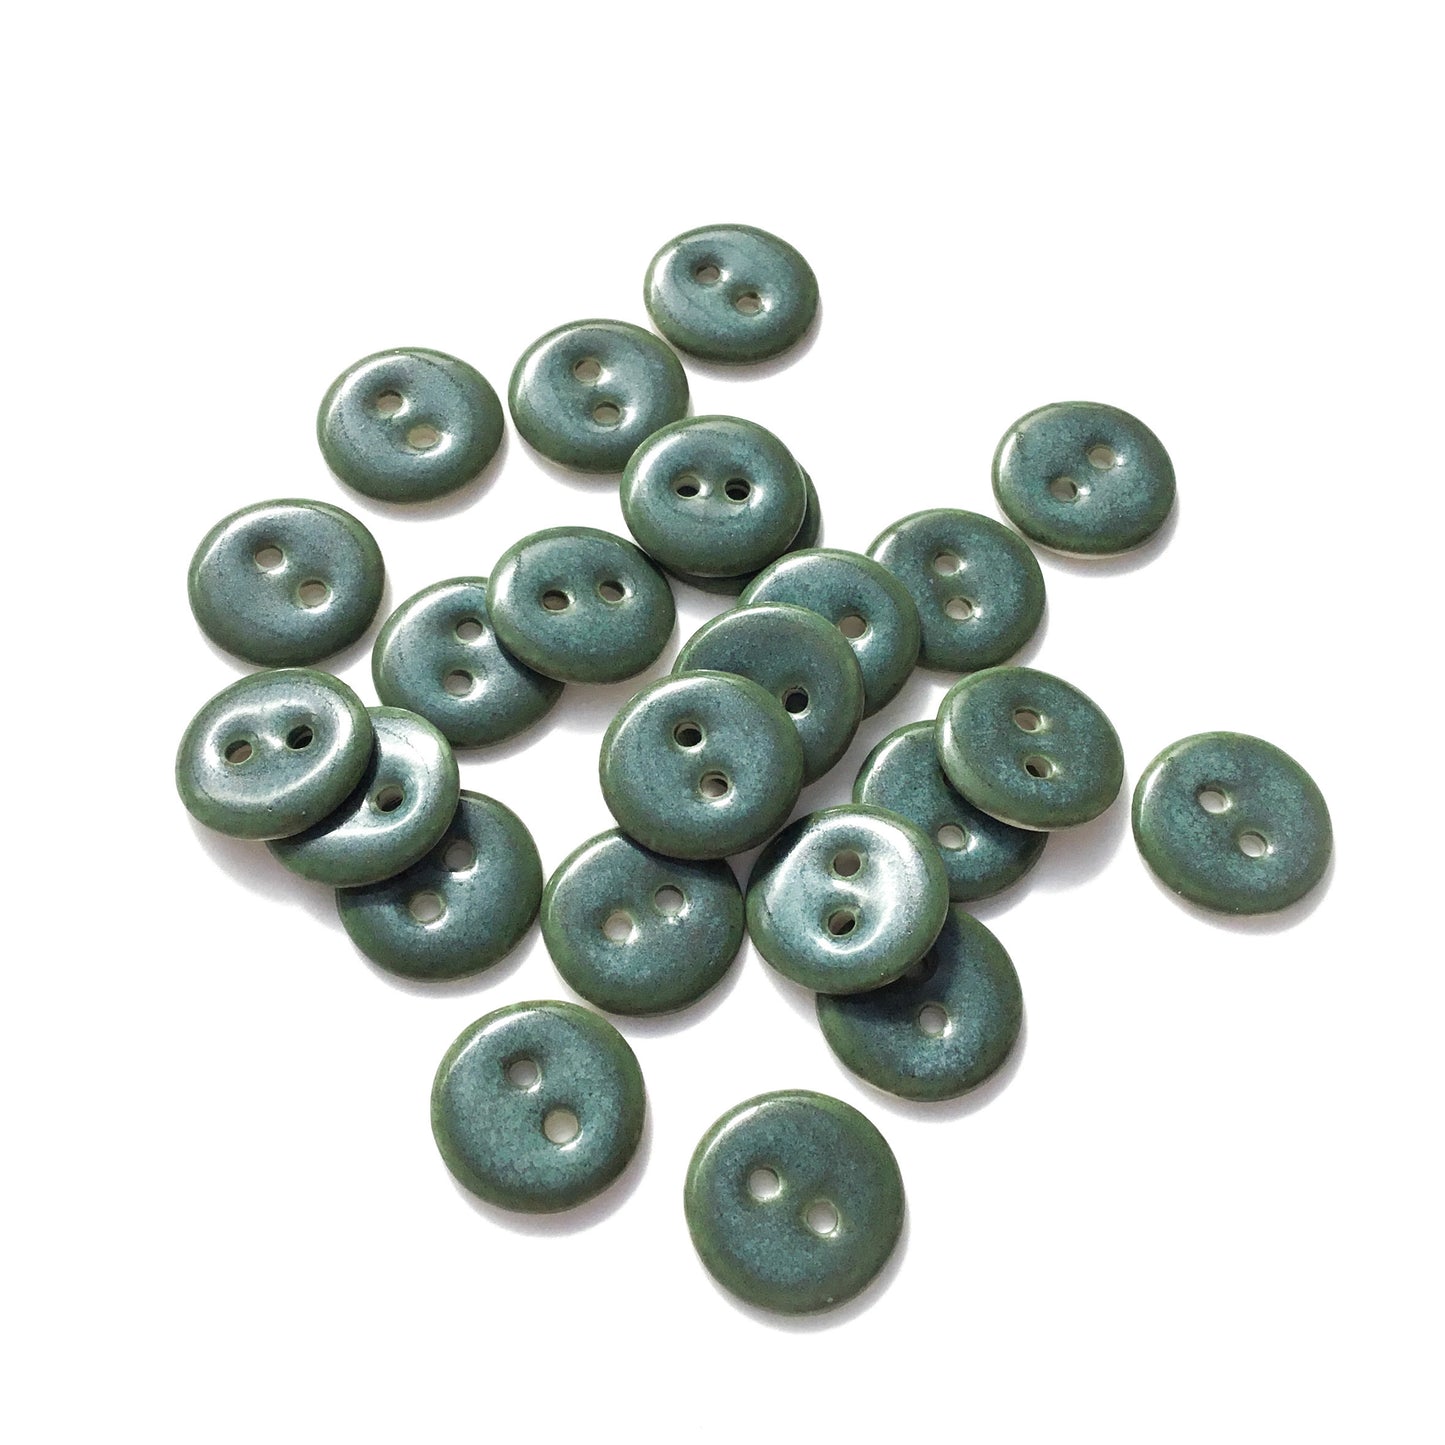 Iridescent Blue-Green Porcelain Buttons  5/8"